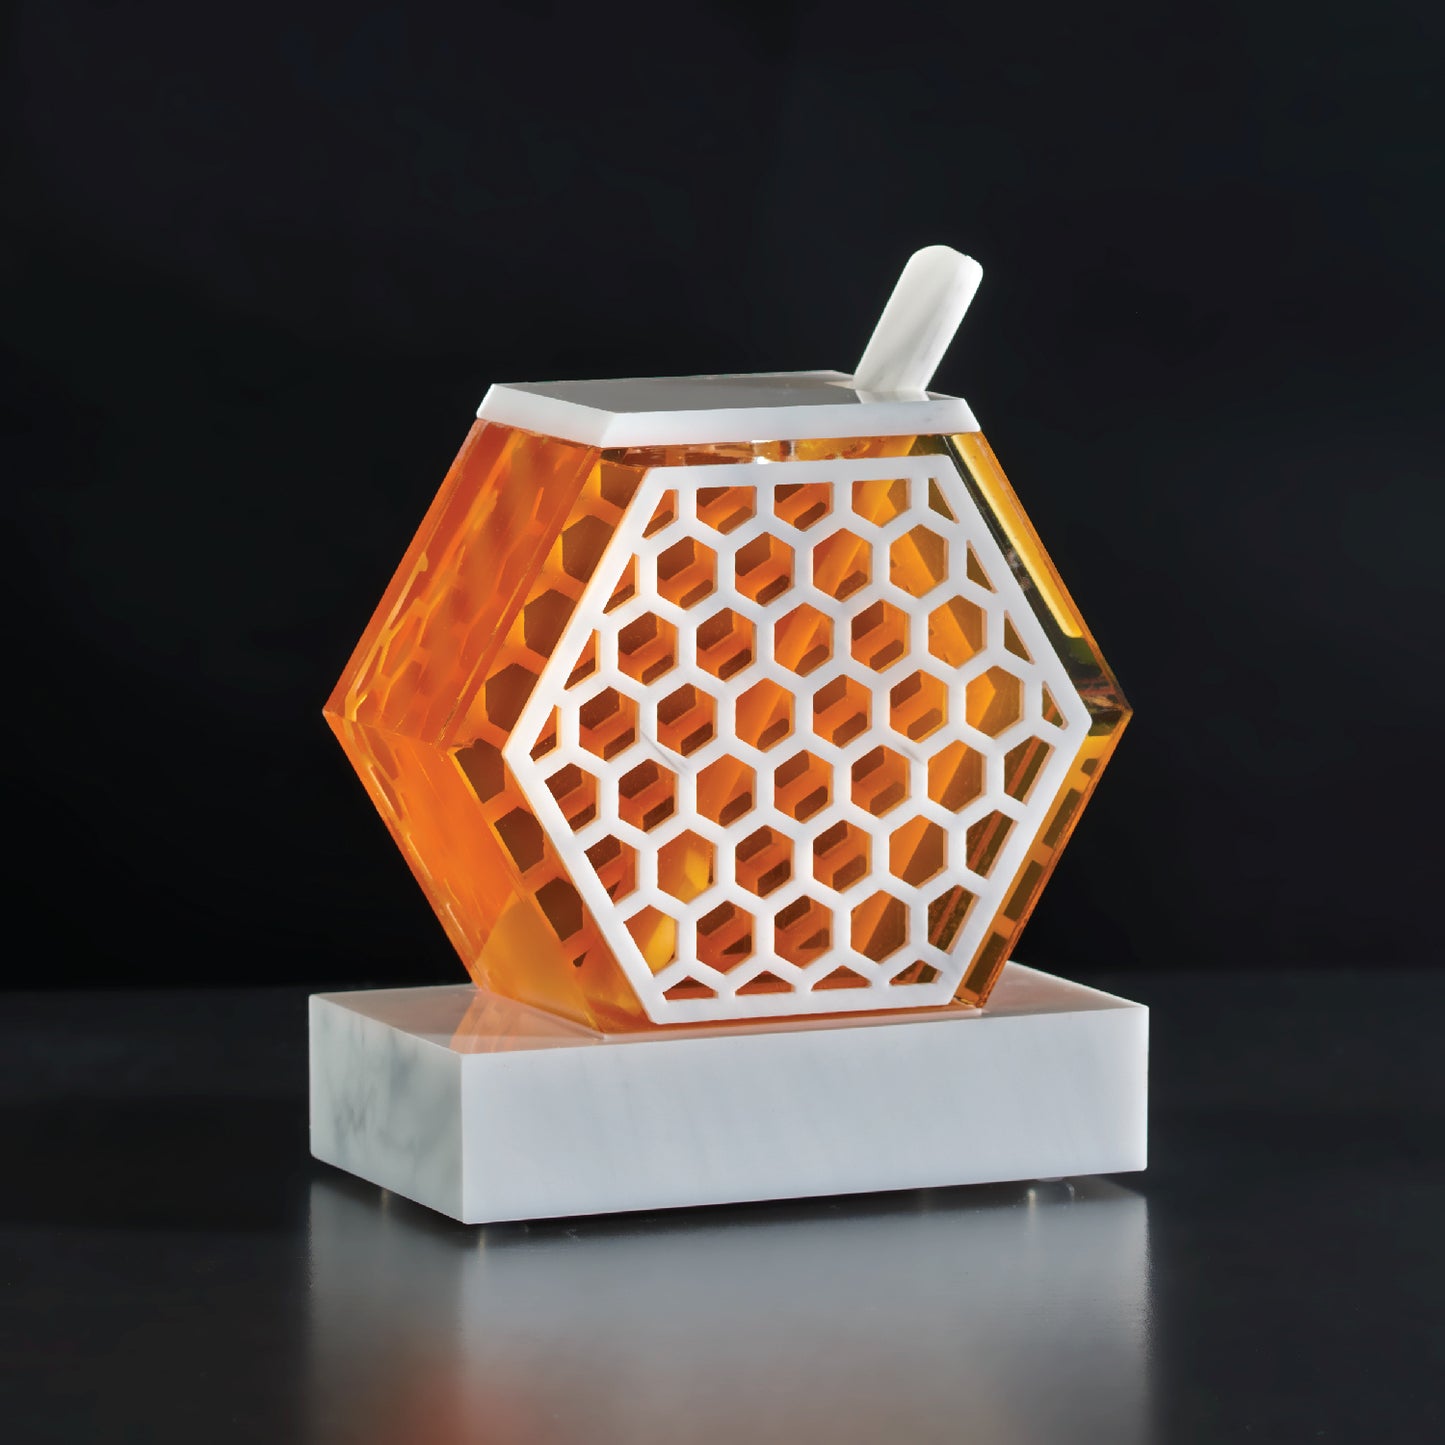 Honeycomb Honey Dish- White Marble Lucite